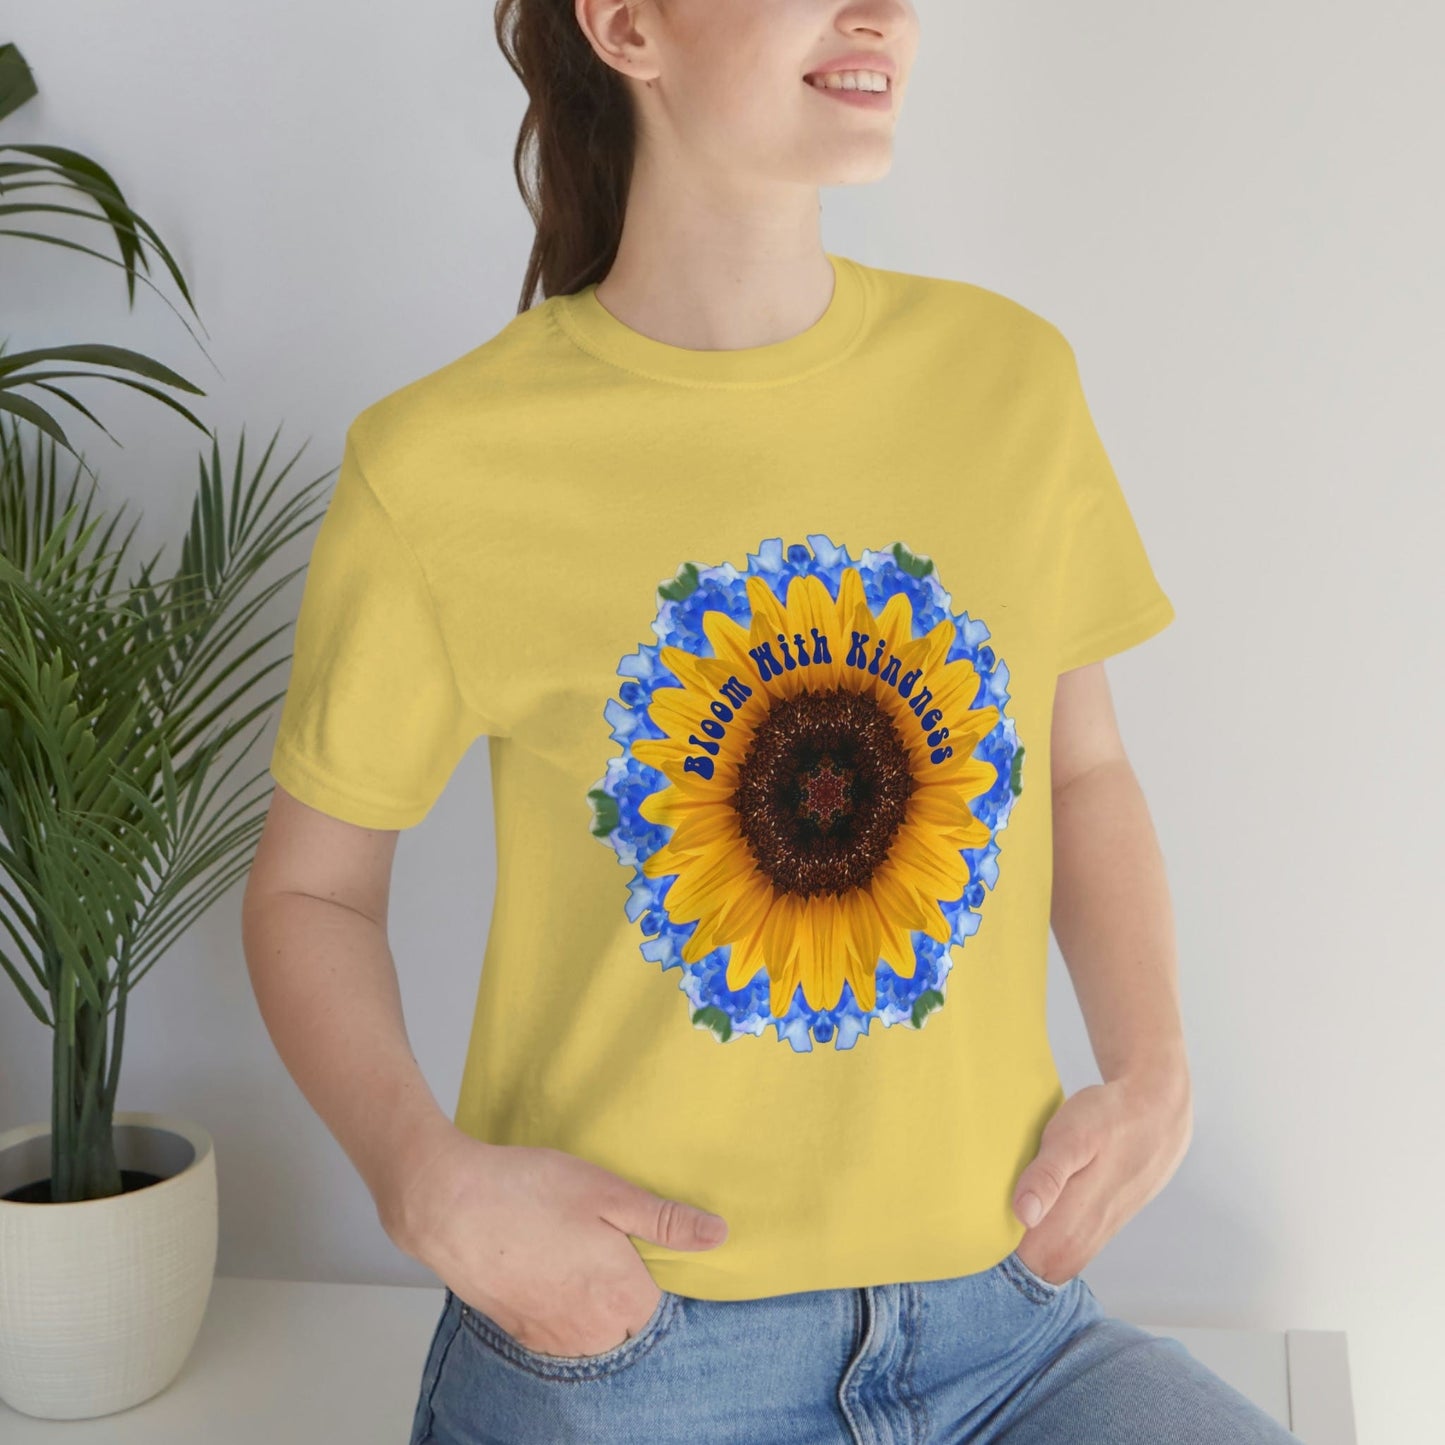 Sunflower TShirt, Zen Poet Shirt, Fun Shirt Designs, Cute Shirts Teens, Kindness T Shirt Bloom With Kindness